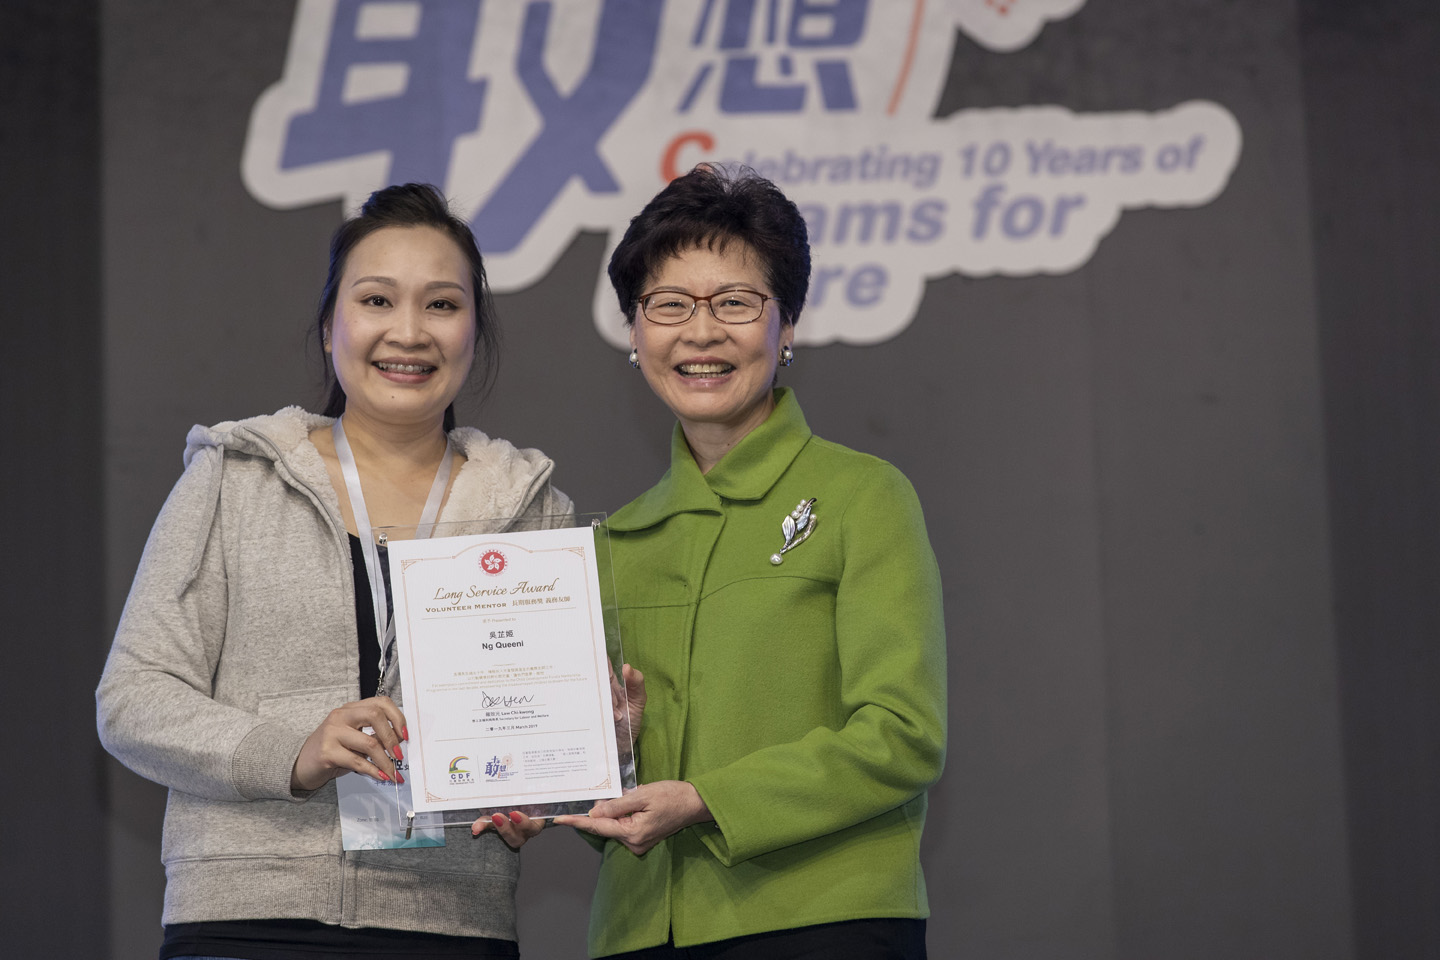 過去十年曾參與十個兒童發展基金計劃並照顧了共20位學員的友師吳芷姬女士，獲頒發「長期服務義務友師」嘉許狀。